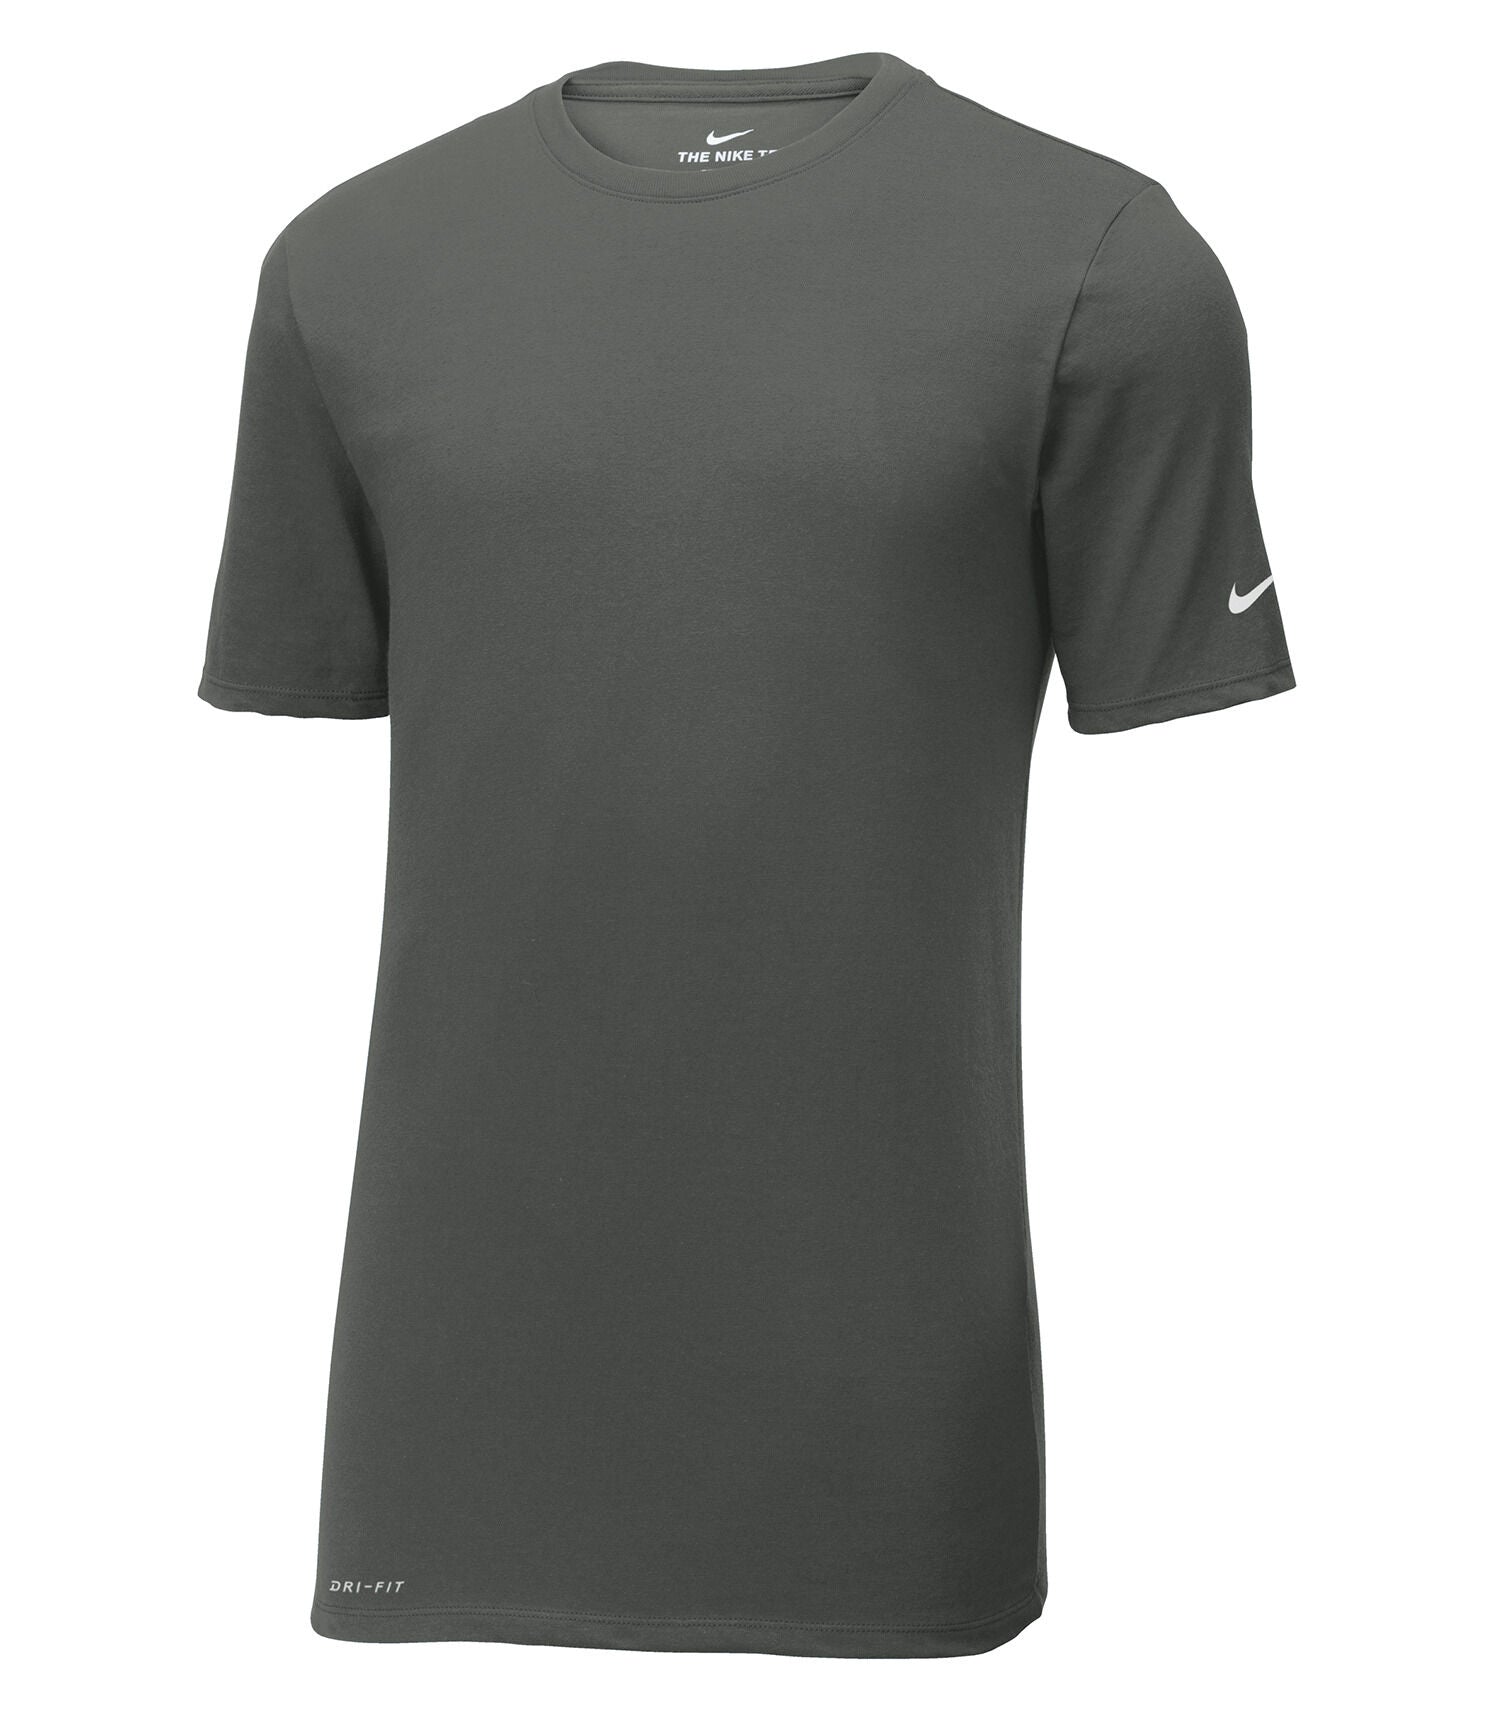 NKBQ5231 Camiseta Nike Cotton/Poly - GPN Entreprises